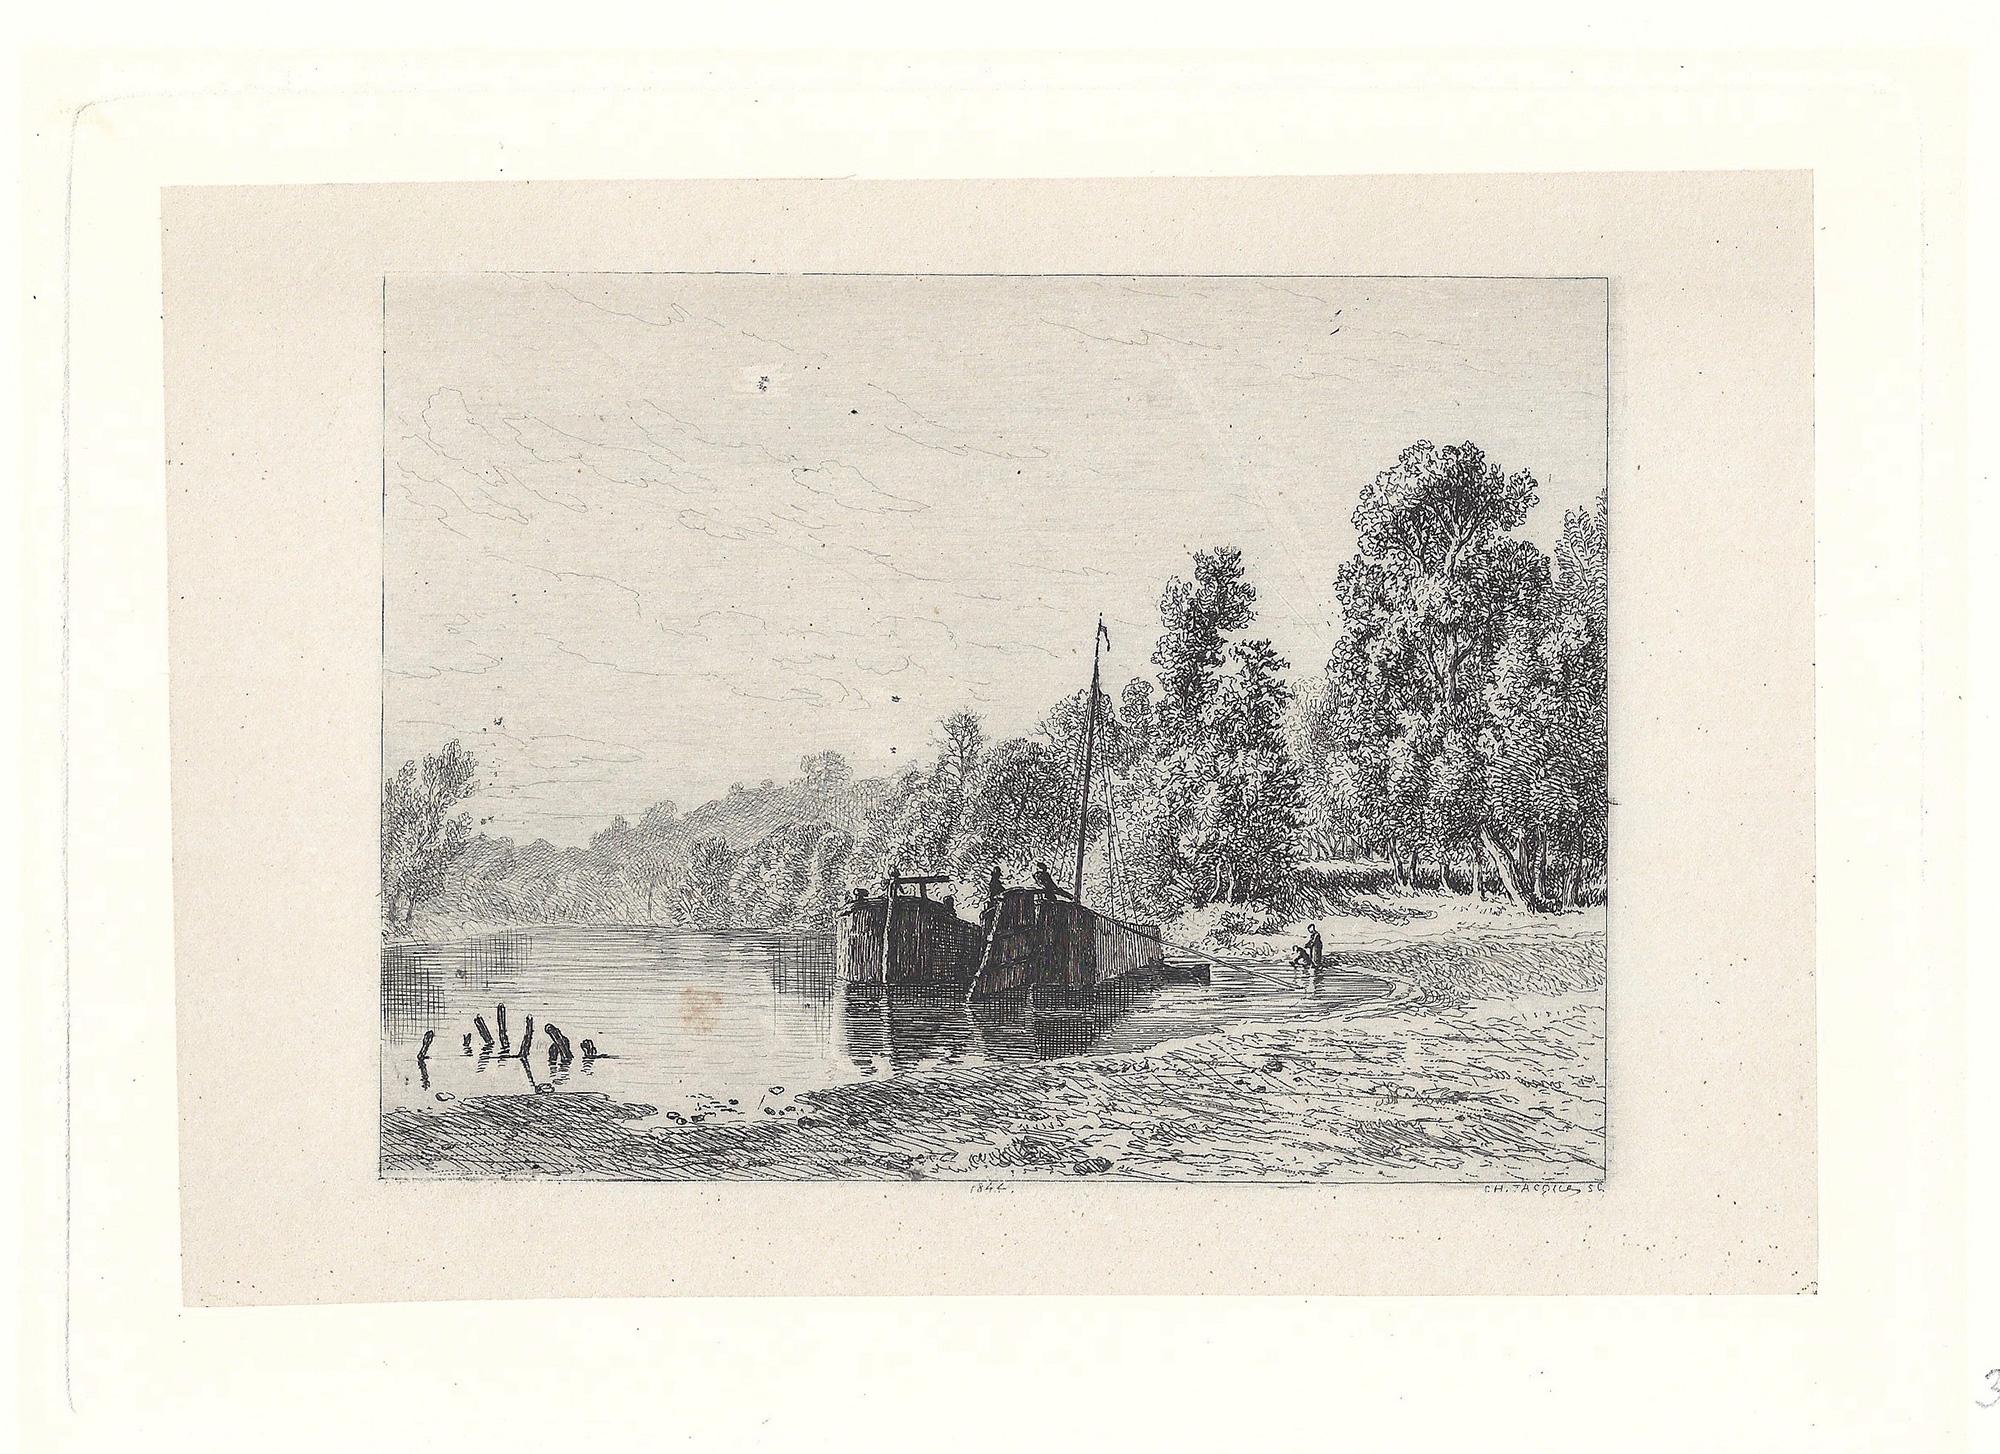 Bords d'une rivière avec deux bateaux (River banks with two boats) - Print by Charles-Emile Jacque